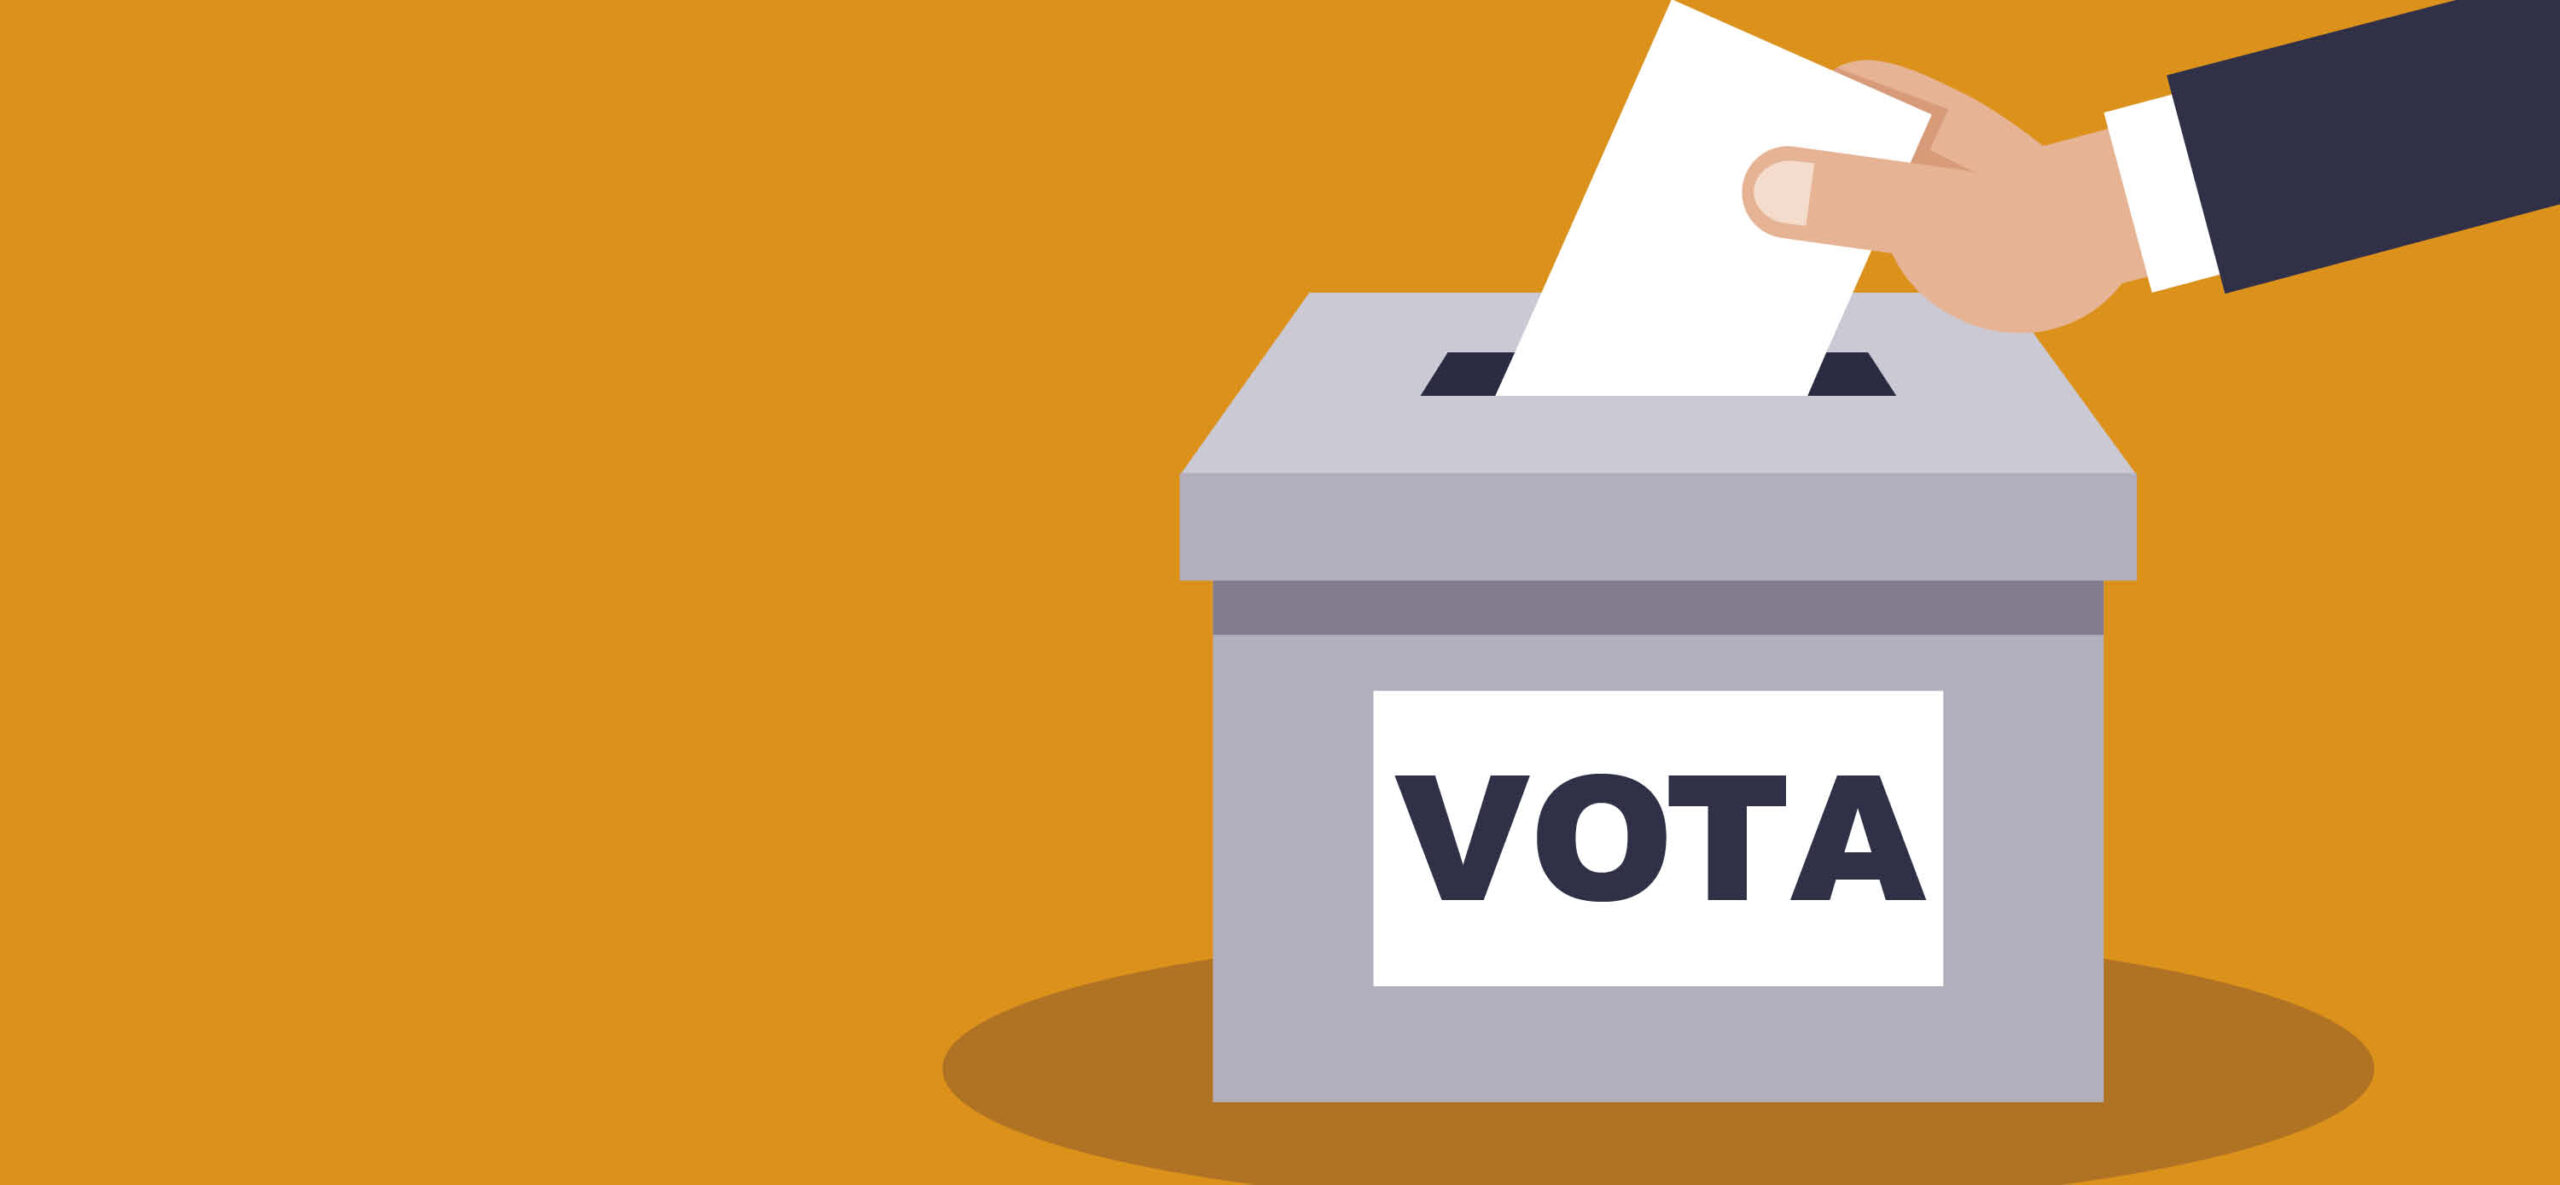 Elezioni amministrative 2020: immagine di mano che inserisce una scheda elettorale nella scatola del voto.